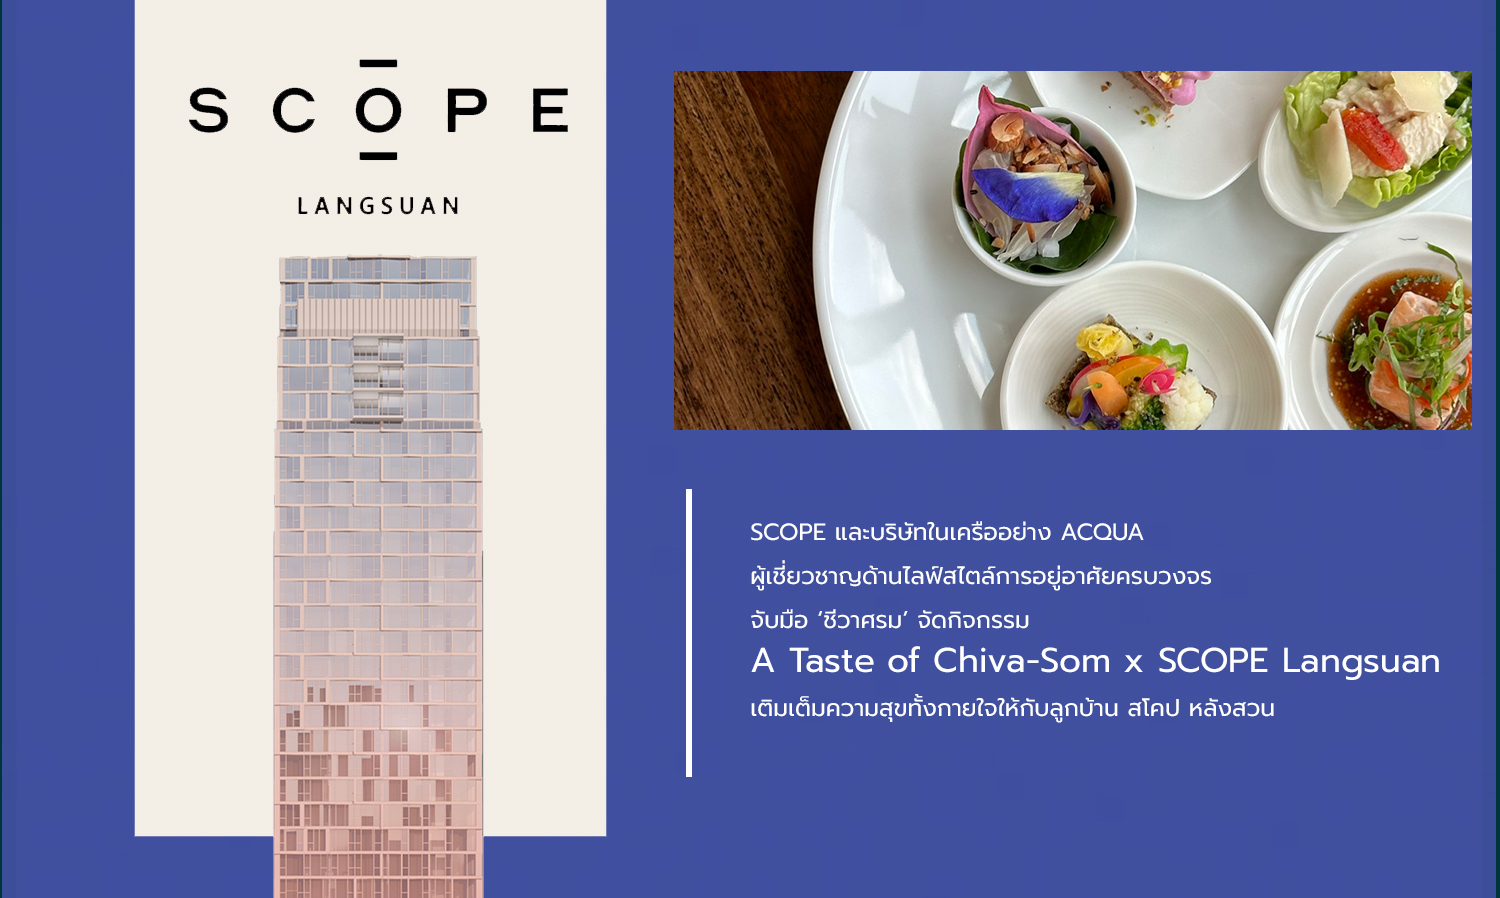 SCOPE และบริษัทในเครืออย่าง ACQUA ผู้เชี่ยวชาญด้านไลฟ์สไตล์การอยู่อาศัยครบวงจร จับมือ ชีวาศรม จัดกิจกรรม A Taste of Chiva-Som x SCOPE Langsuan เติมเต็มความสุขทั้งกายใจให้กับลูกบ้าน สโคป หลังสวน